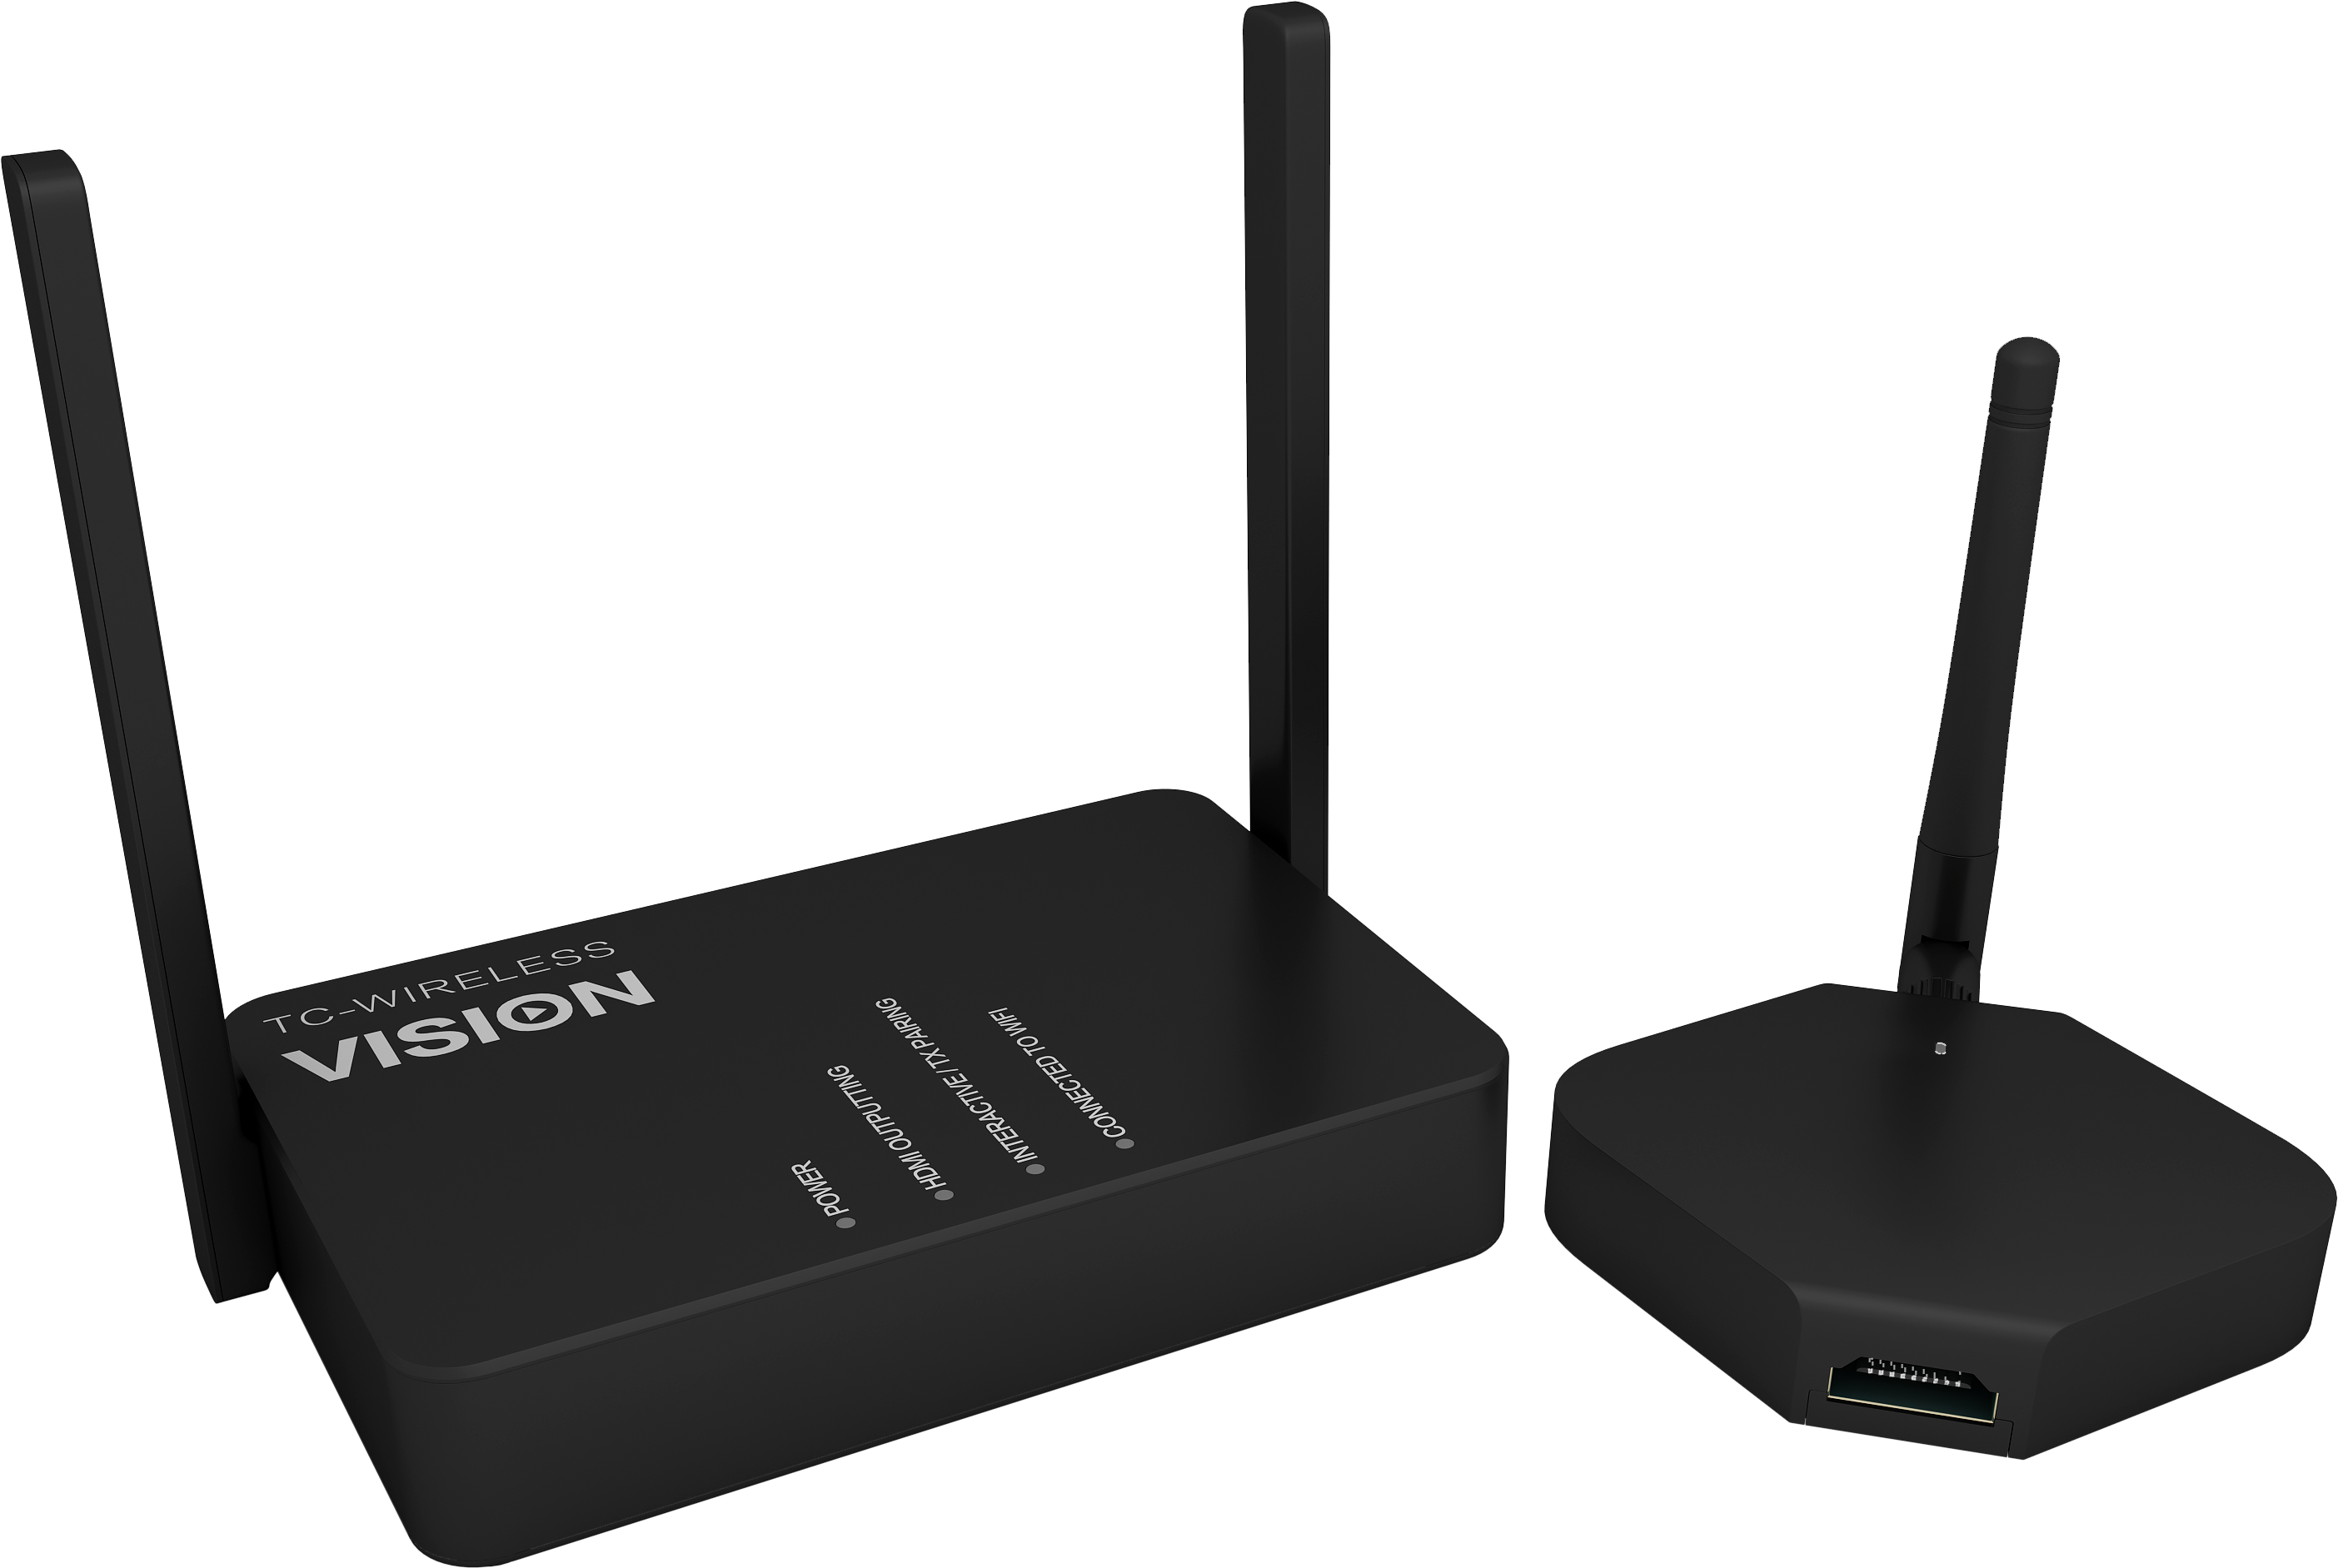 Vision premier sur le marché avec HDMI sans fil et USB